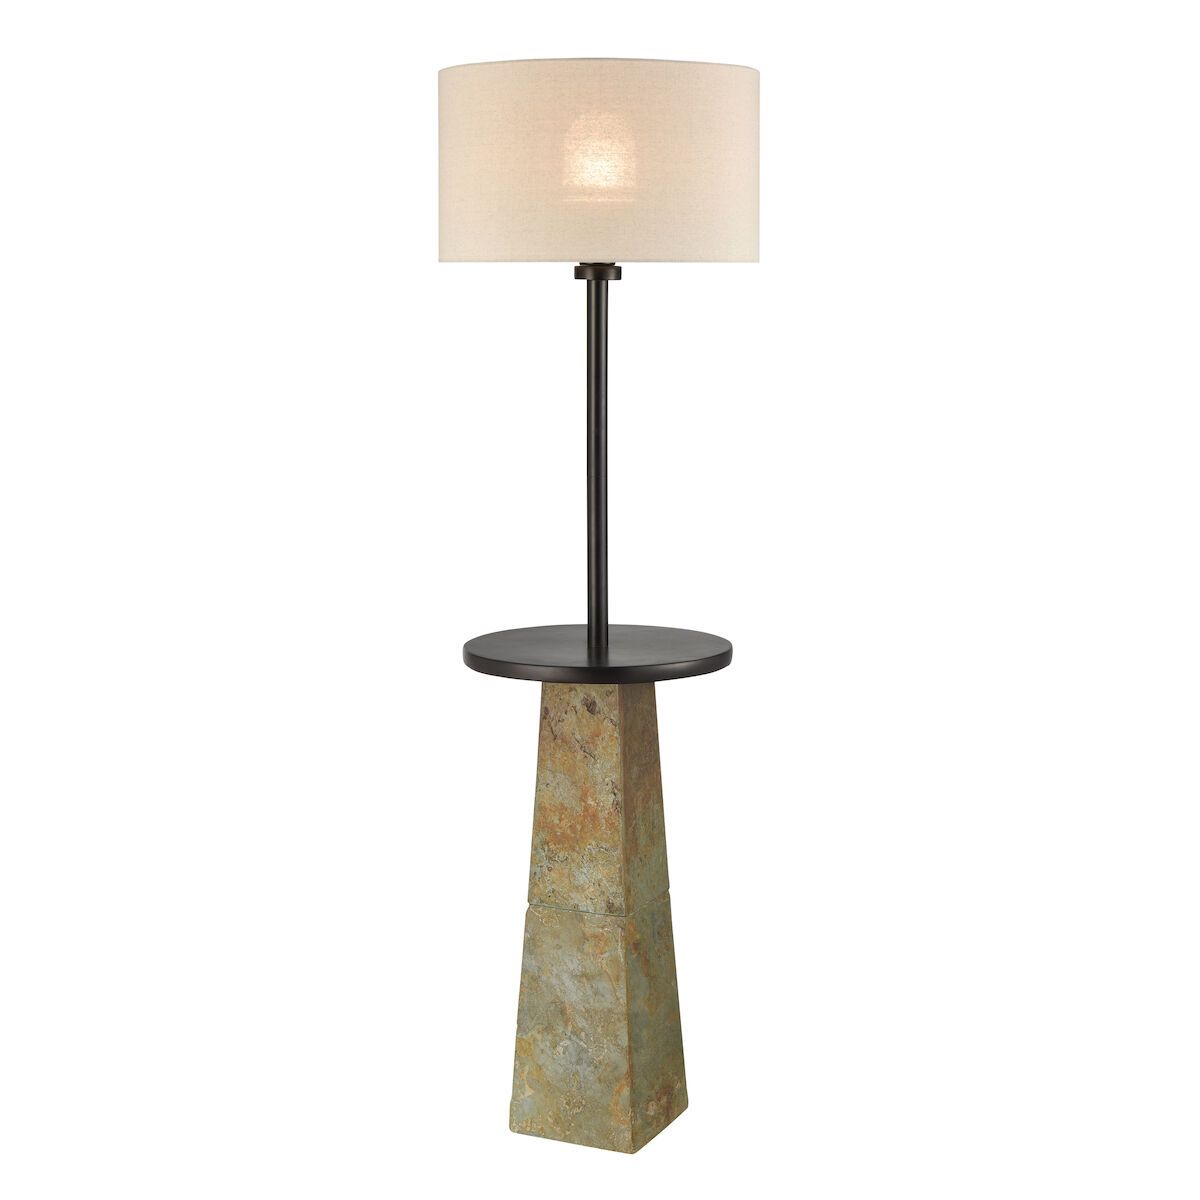 Musee 62'' High 1 Light Outdoor Floor Lamp | D4548 Elk | Elk Home Regarding 62 Inch Floor Lamps (View 15 of 15)